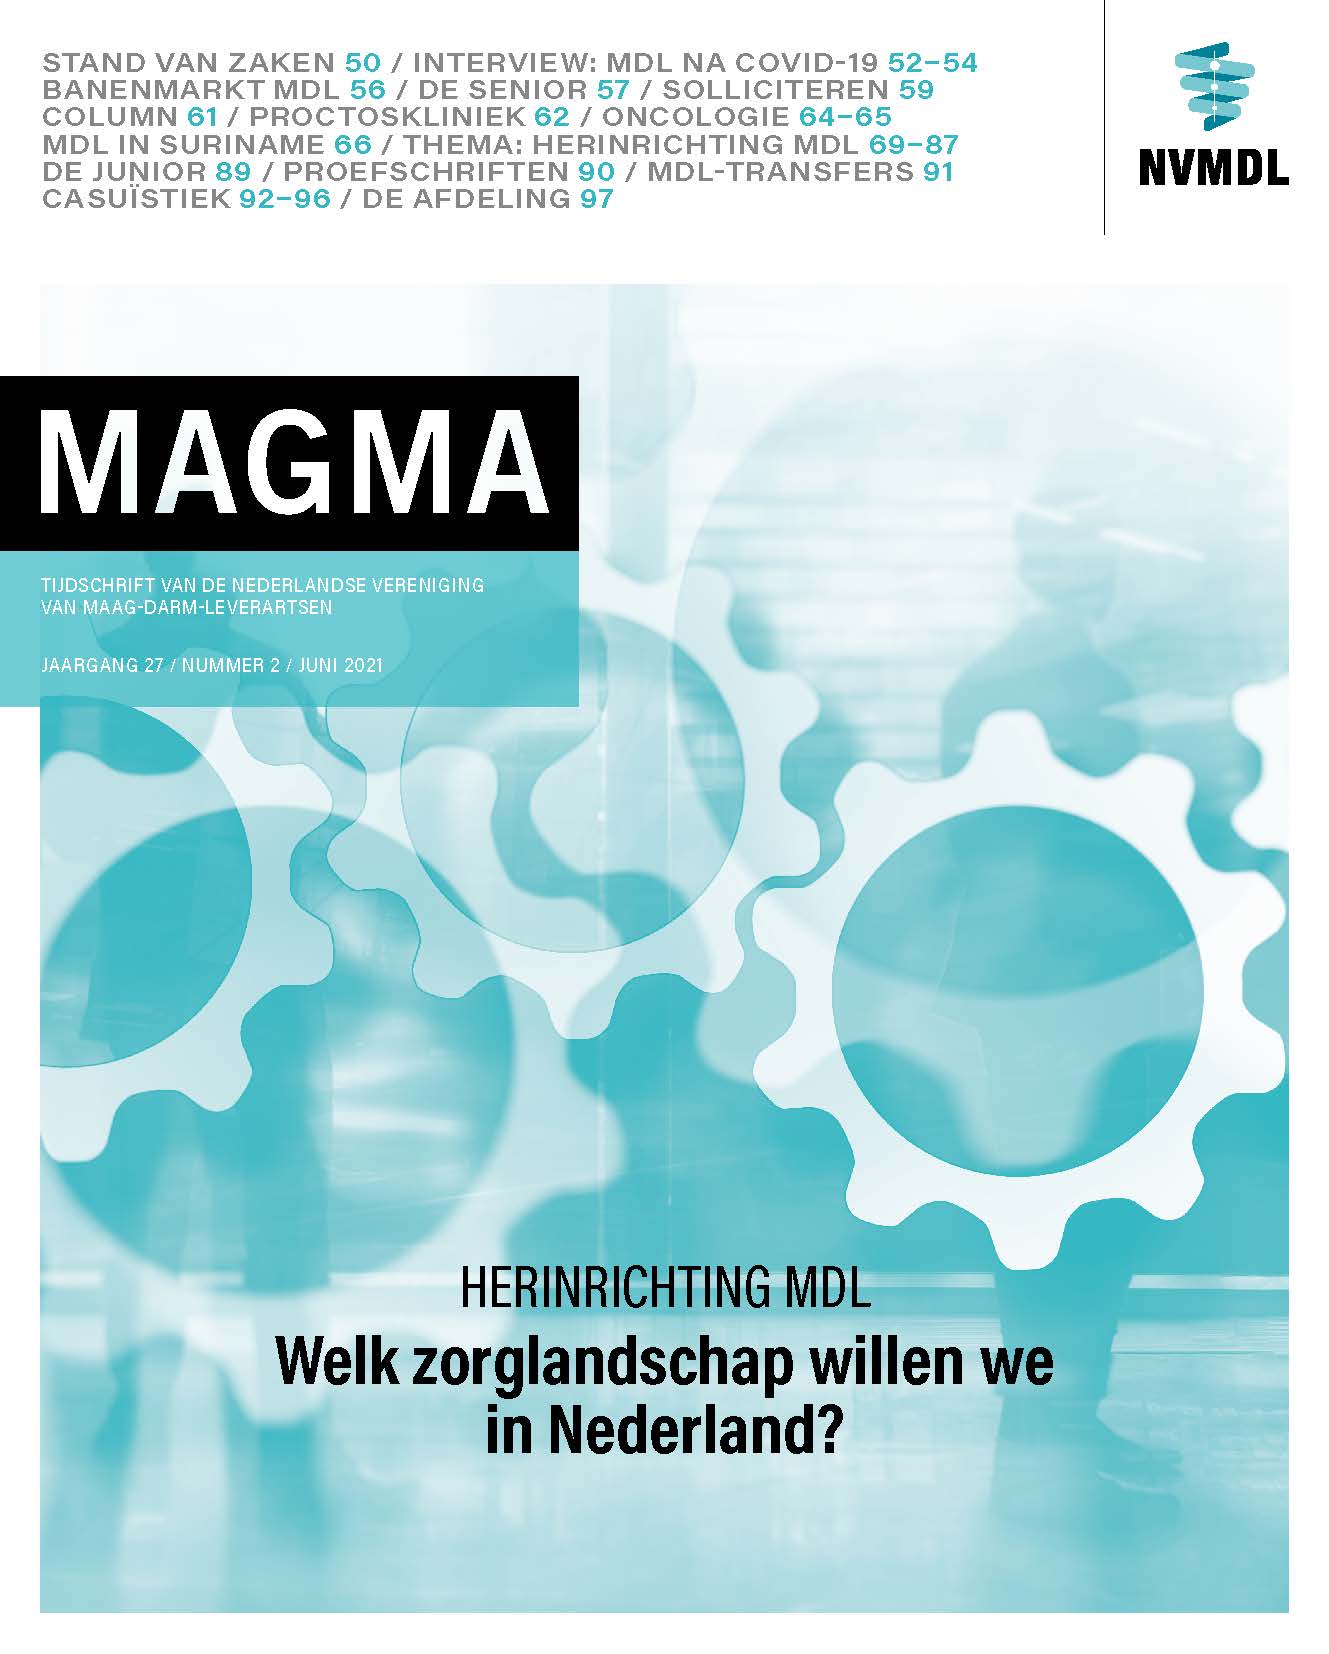 Cover Magma 2 2021.jpg